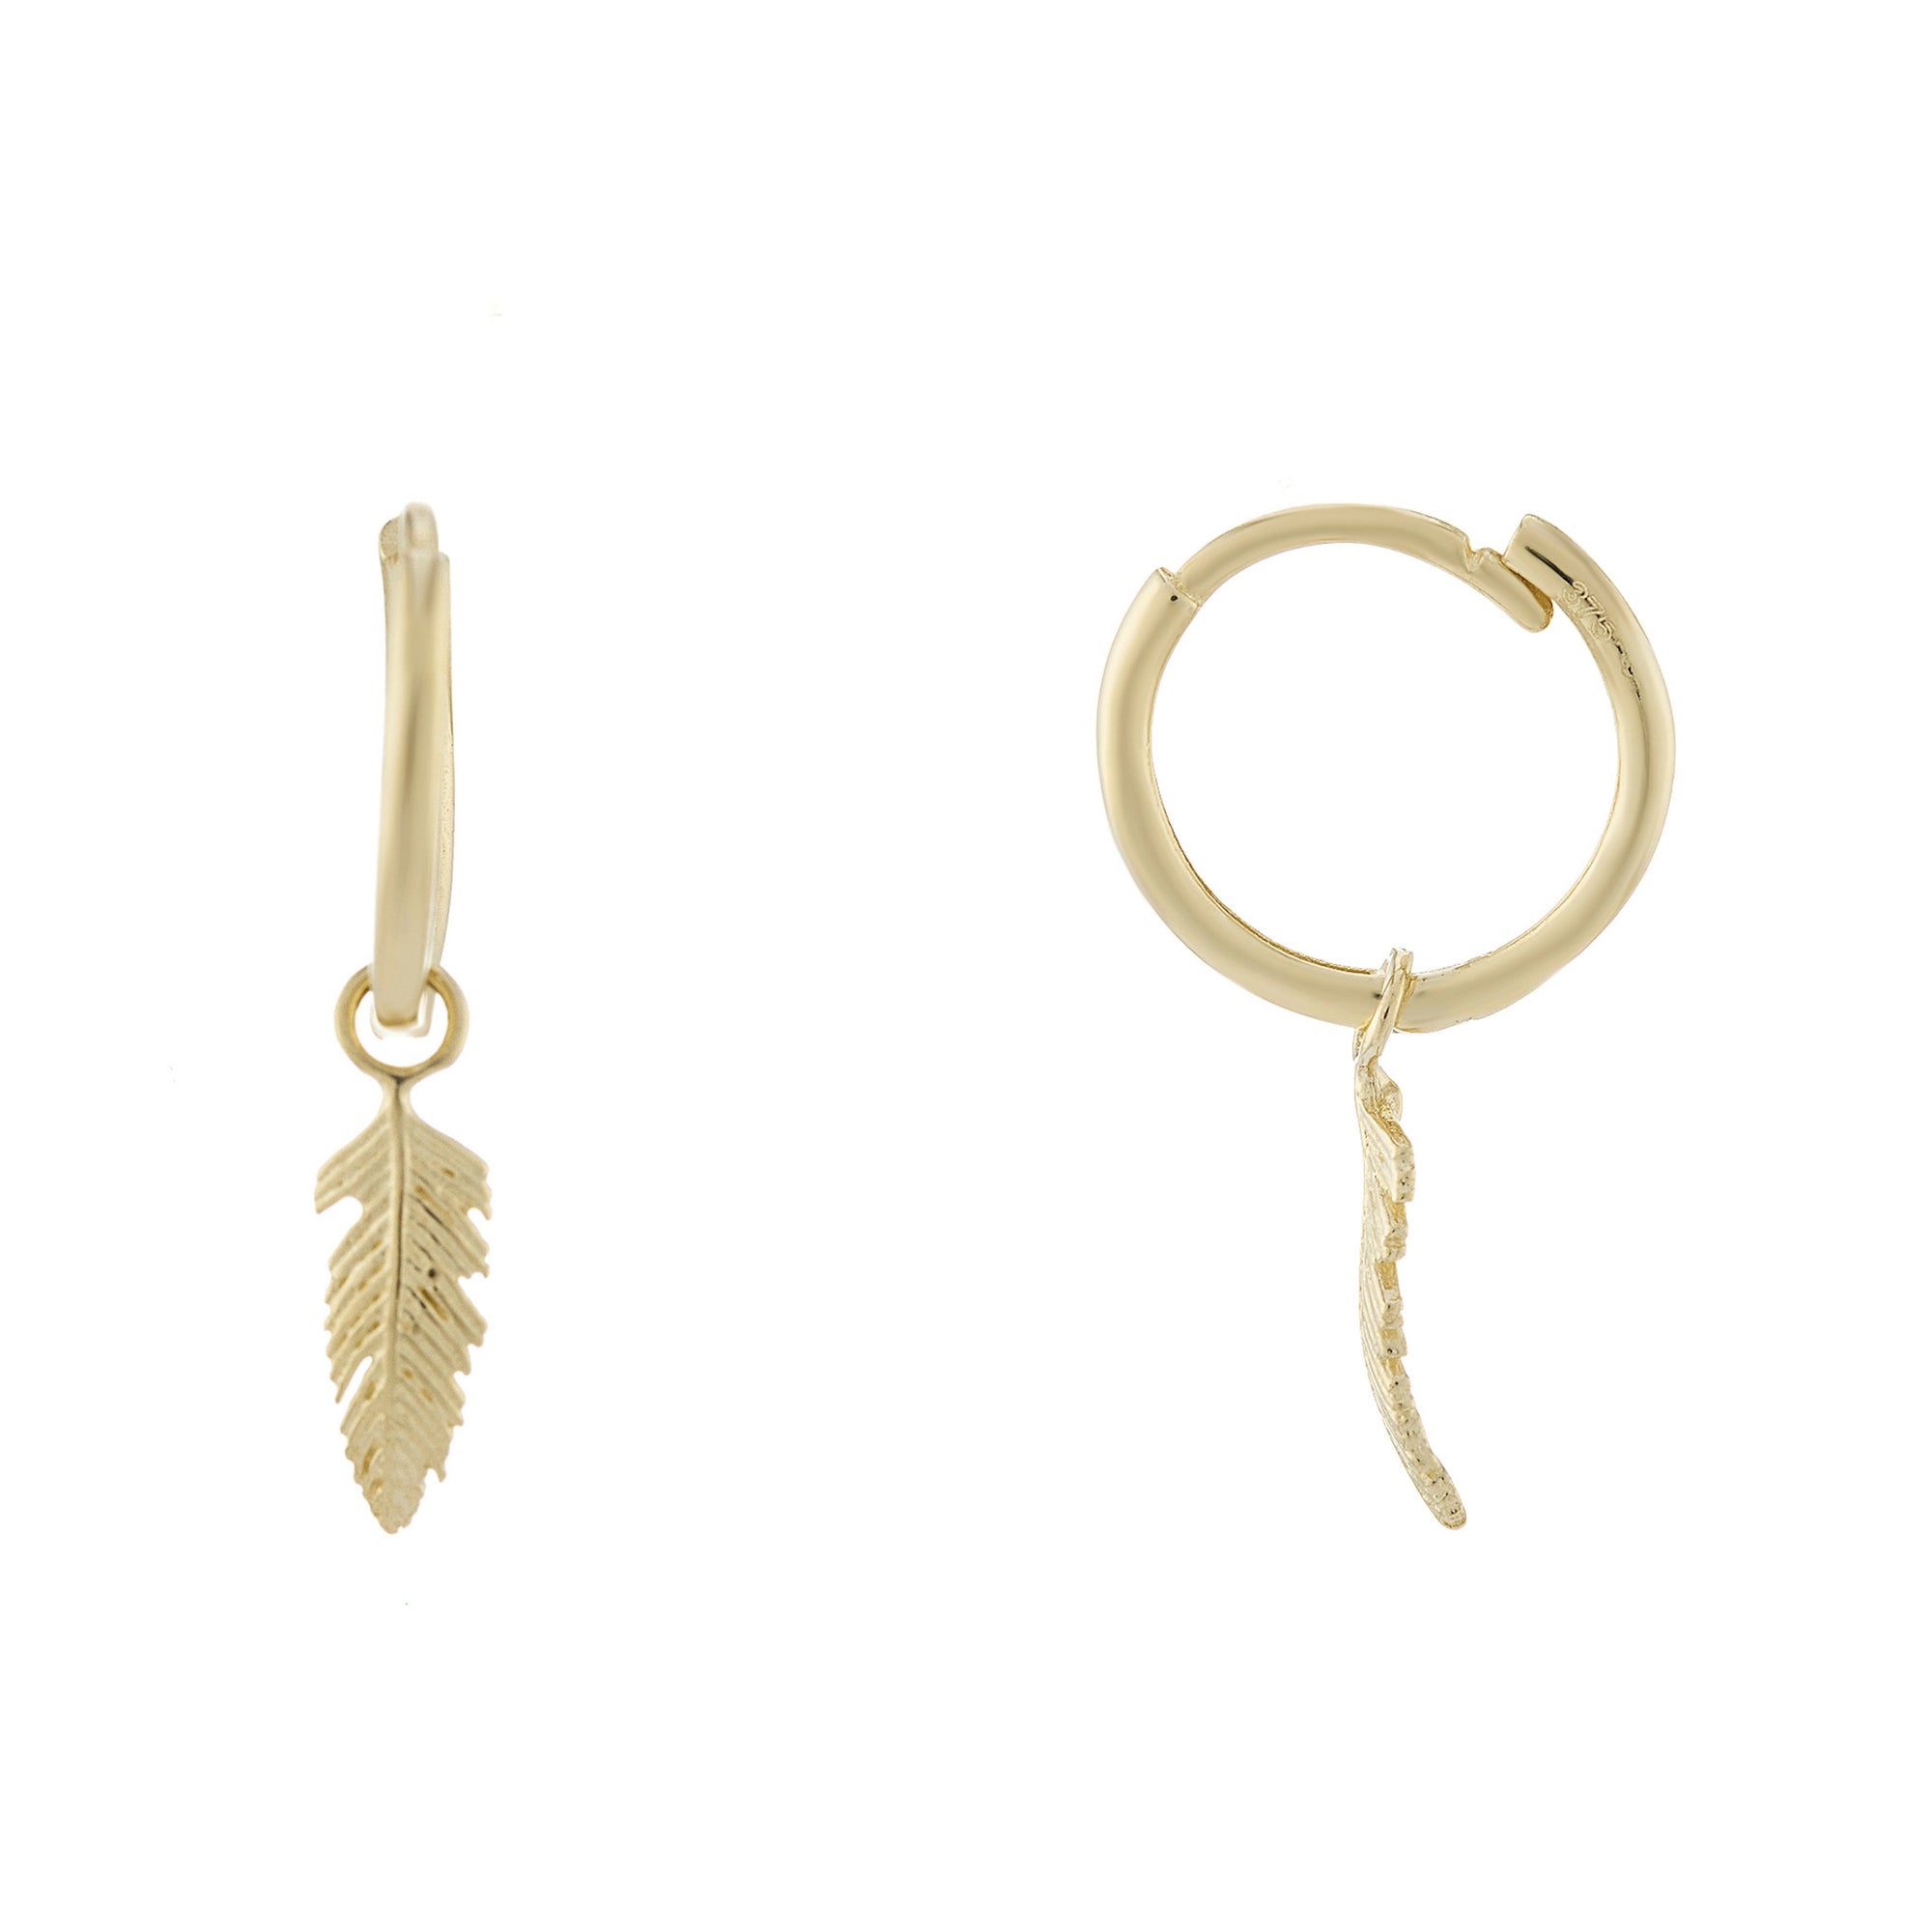 9ct gold hoop earrings with leaf drop